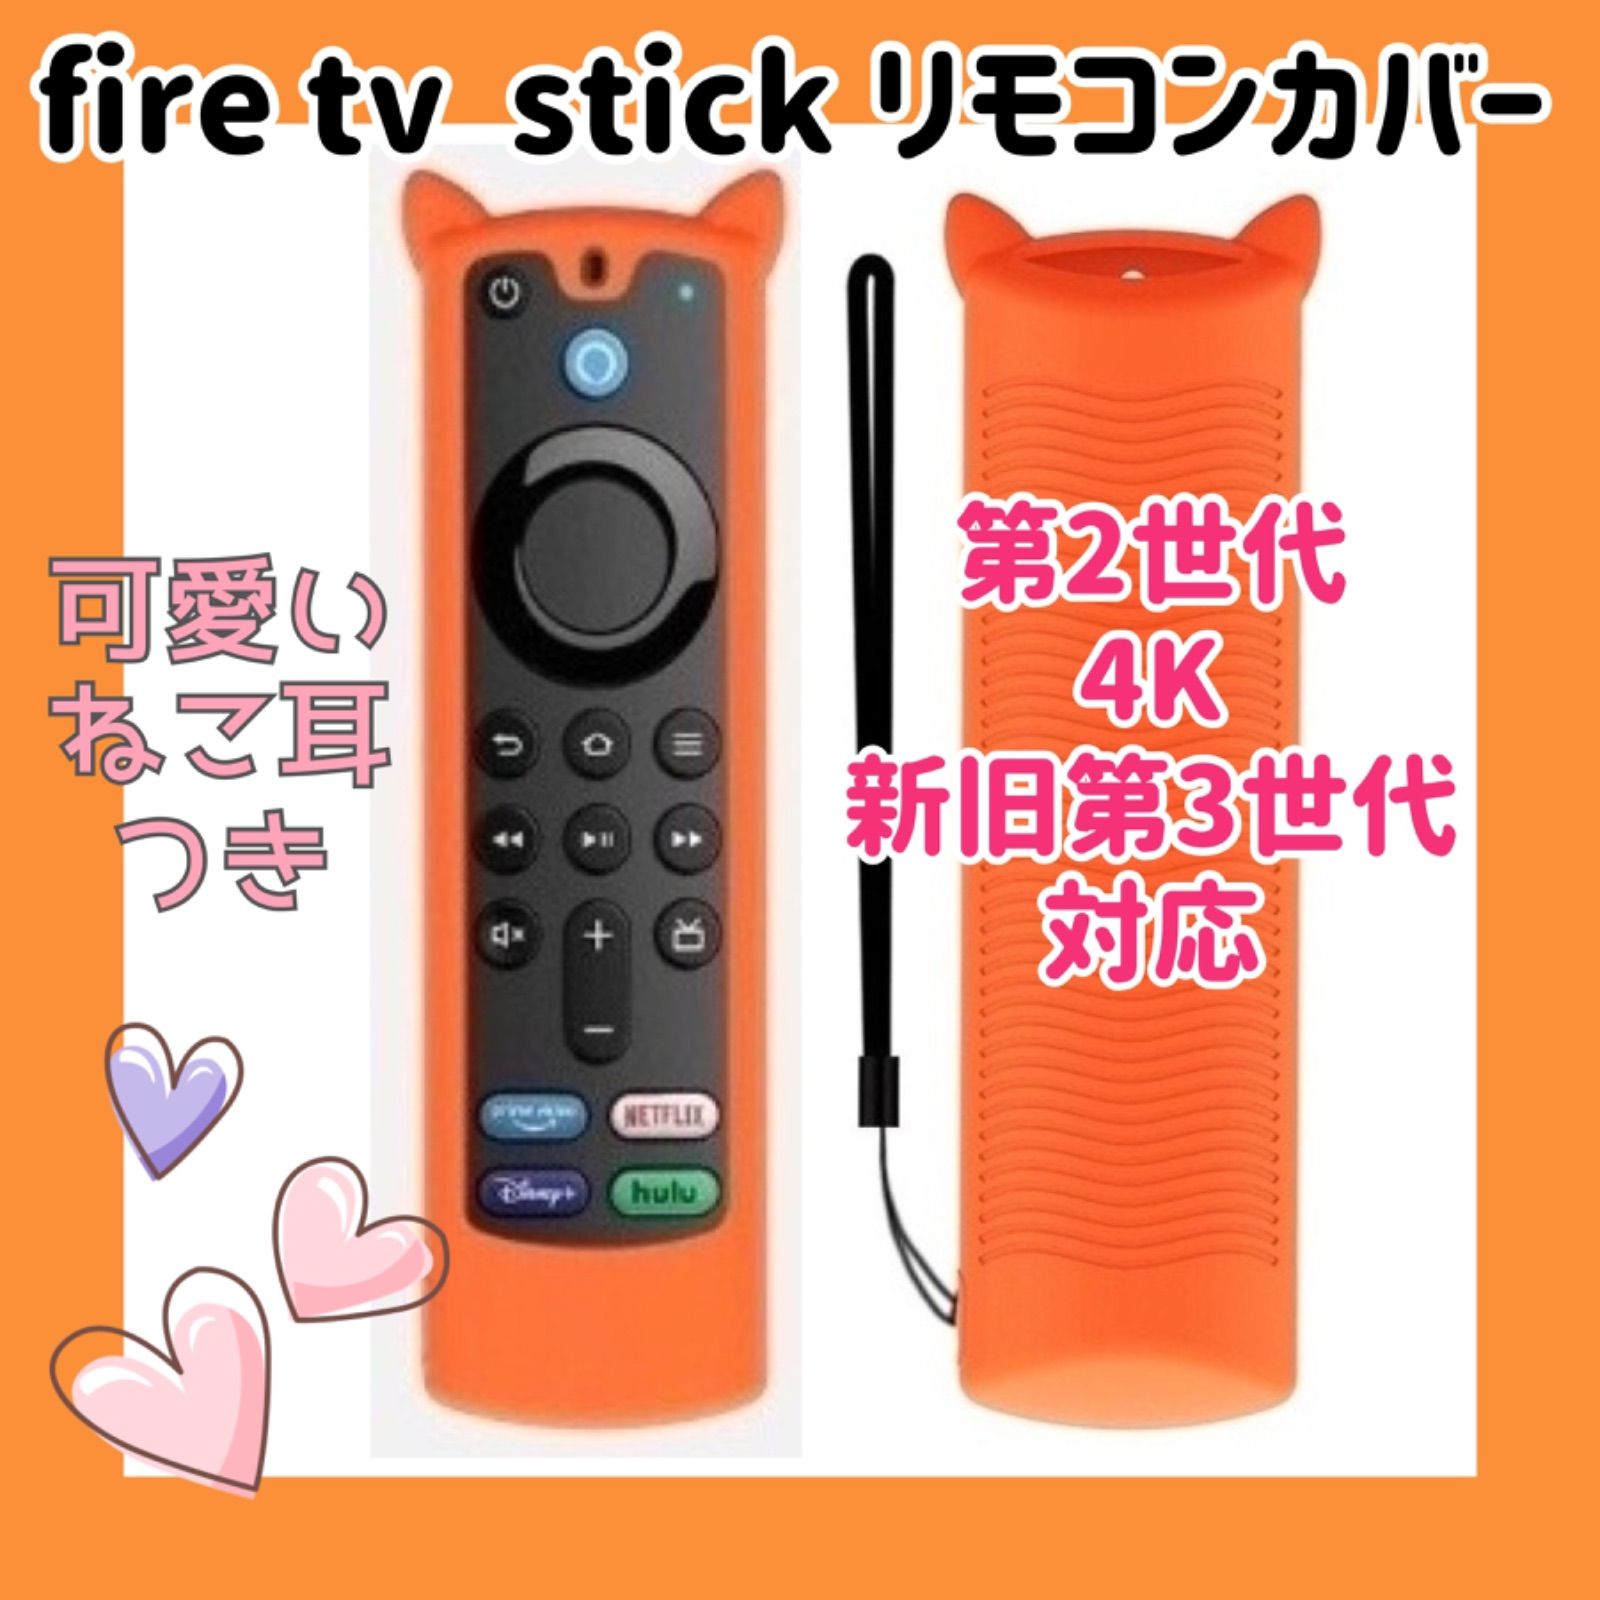 可愛いネコ耳付き】fire tv stick リモコンカバー 【オレンジ】 - メルカリ